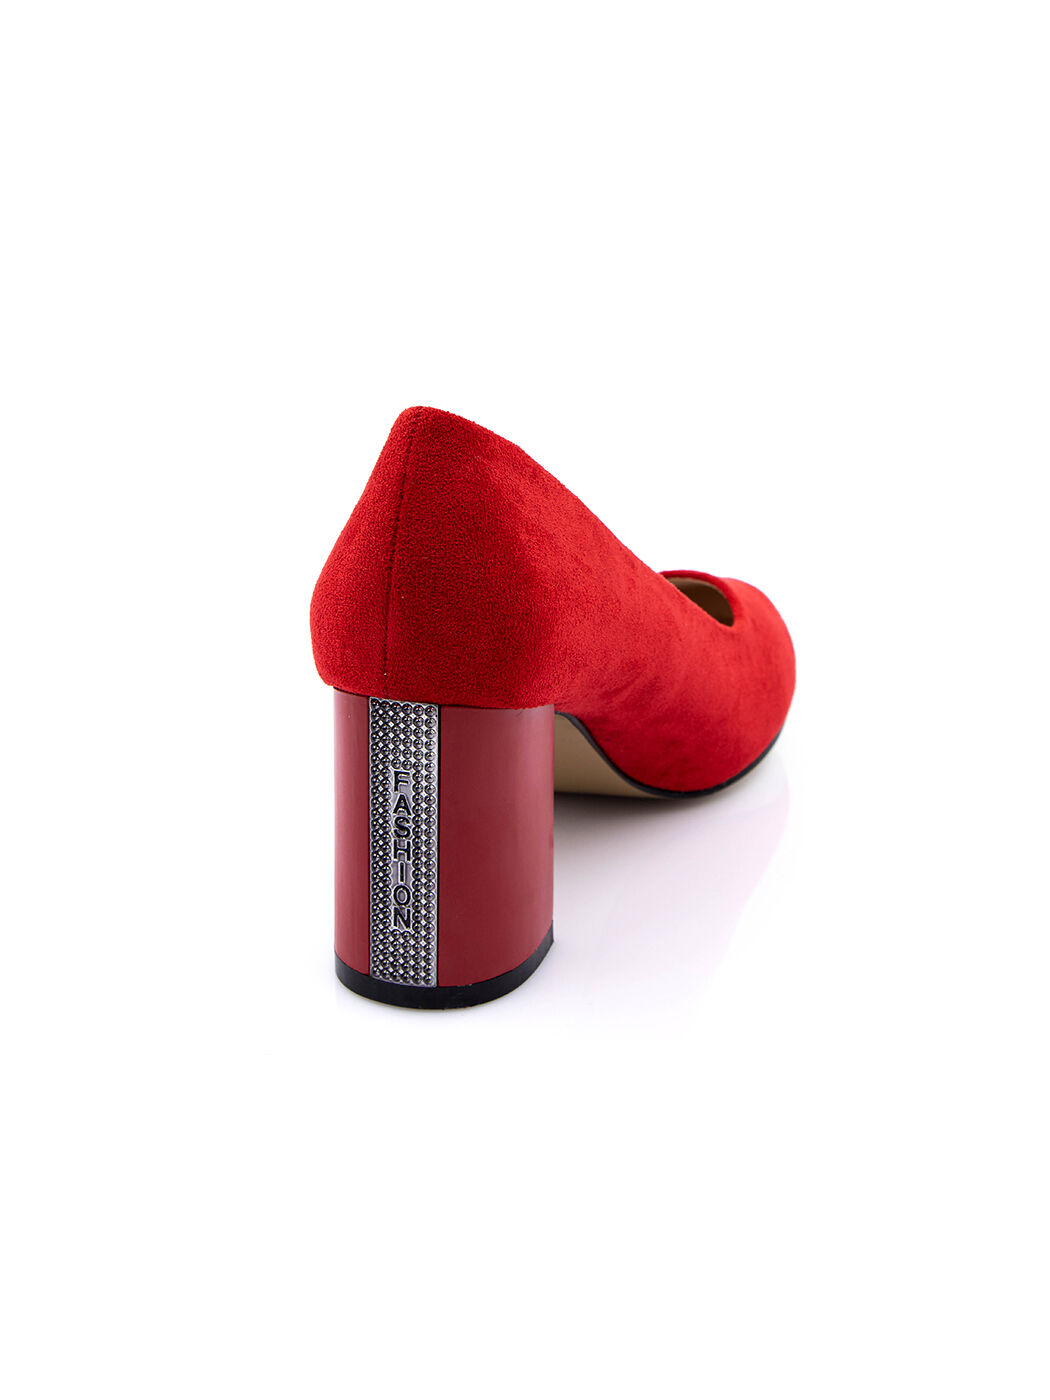 Туфли женские красные экозамша каблук устойчивый демисезон от производителя 3M вид 2